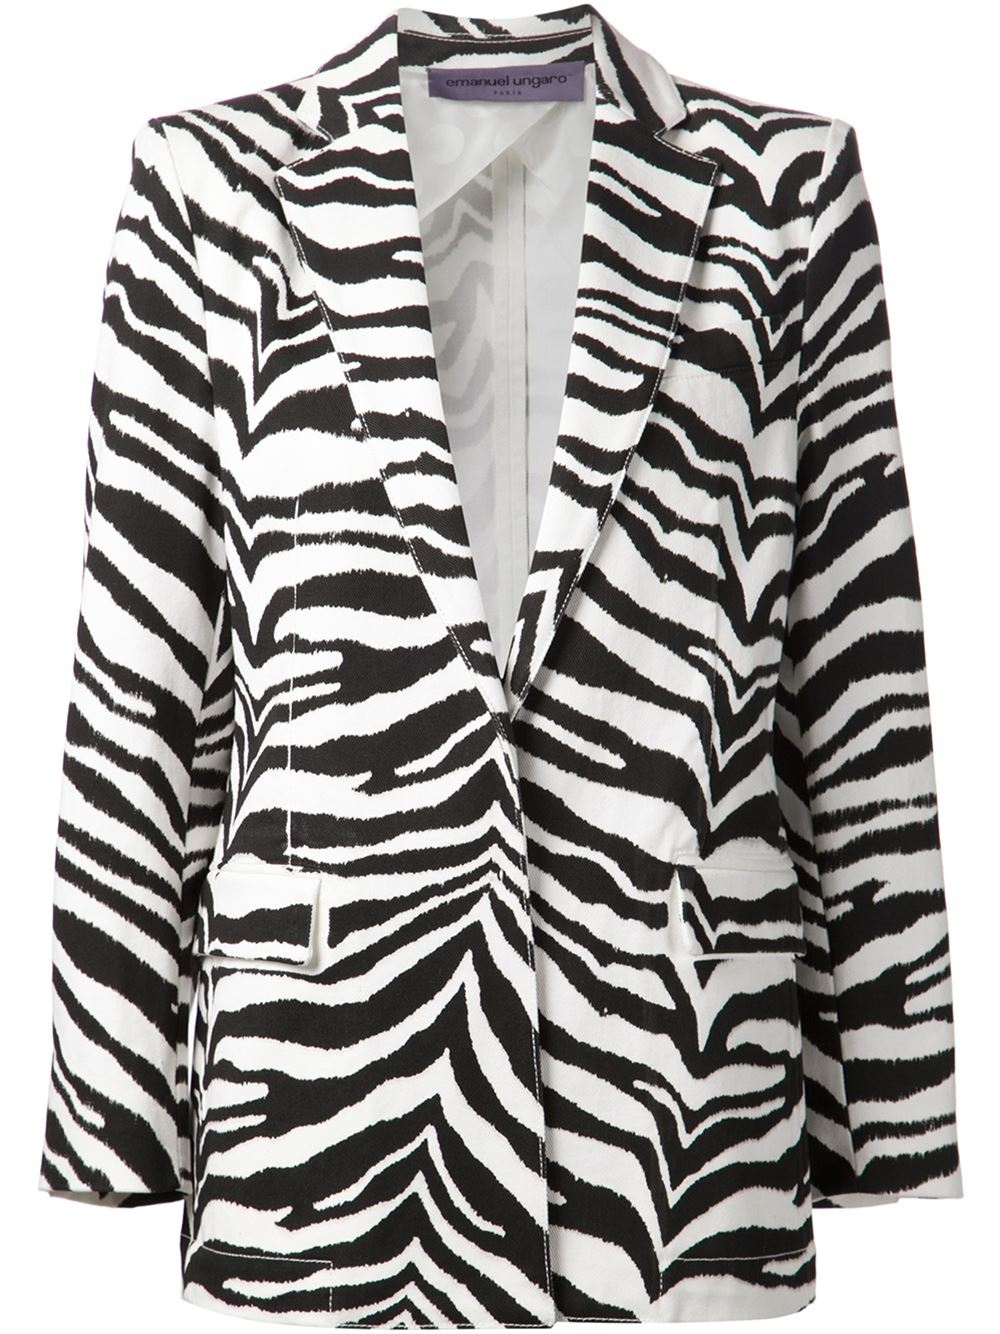 Emanuel ungaro Zebra-Print Jacket in Black | Lyst